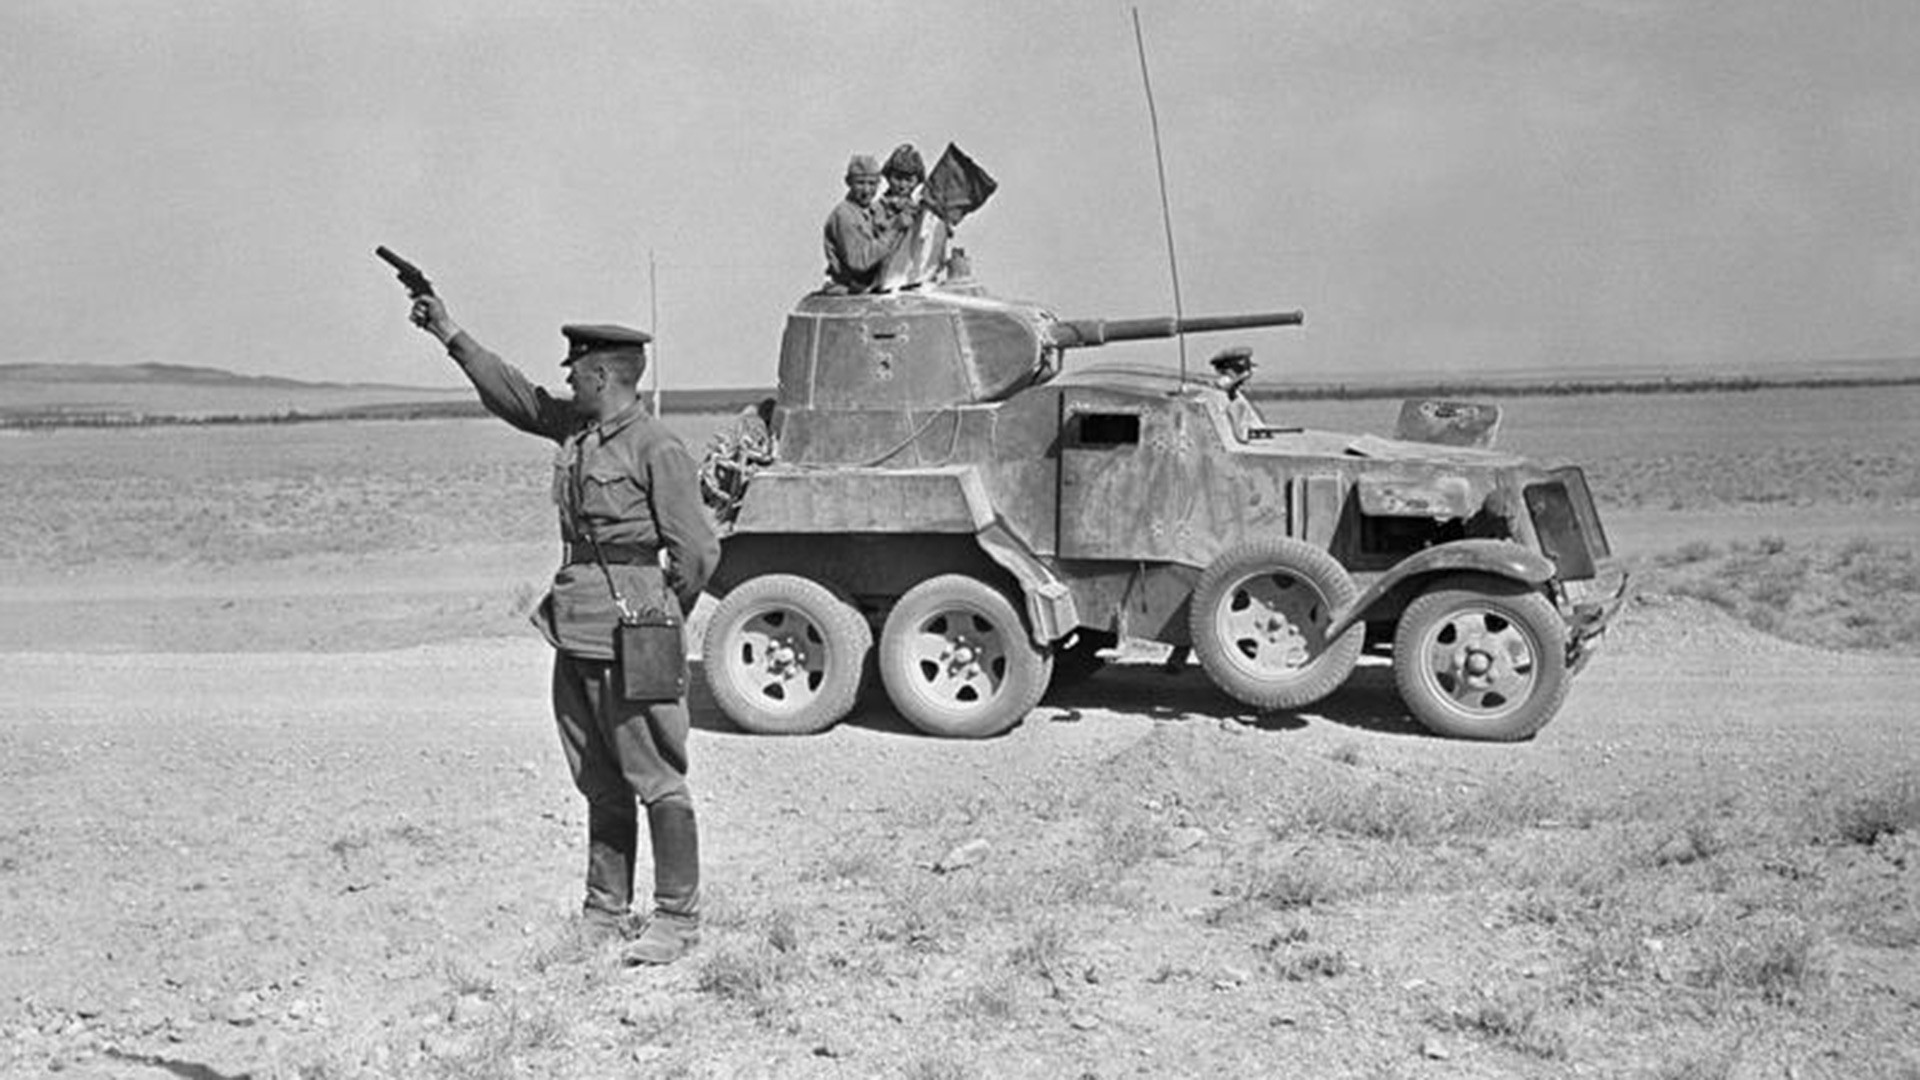 Sovjetski častnik drži v zrak signalno pištolo zraven oklepnega avtomobila BA-10 v iranski puščavi.